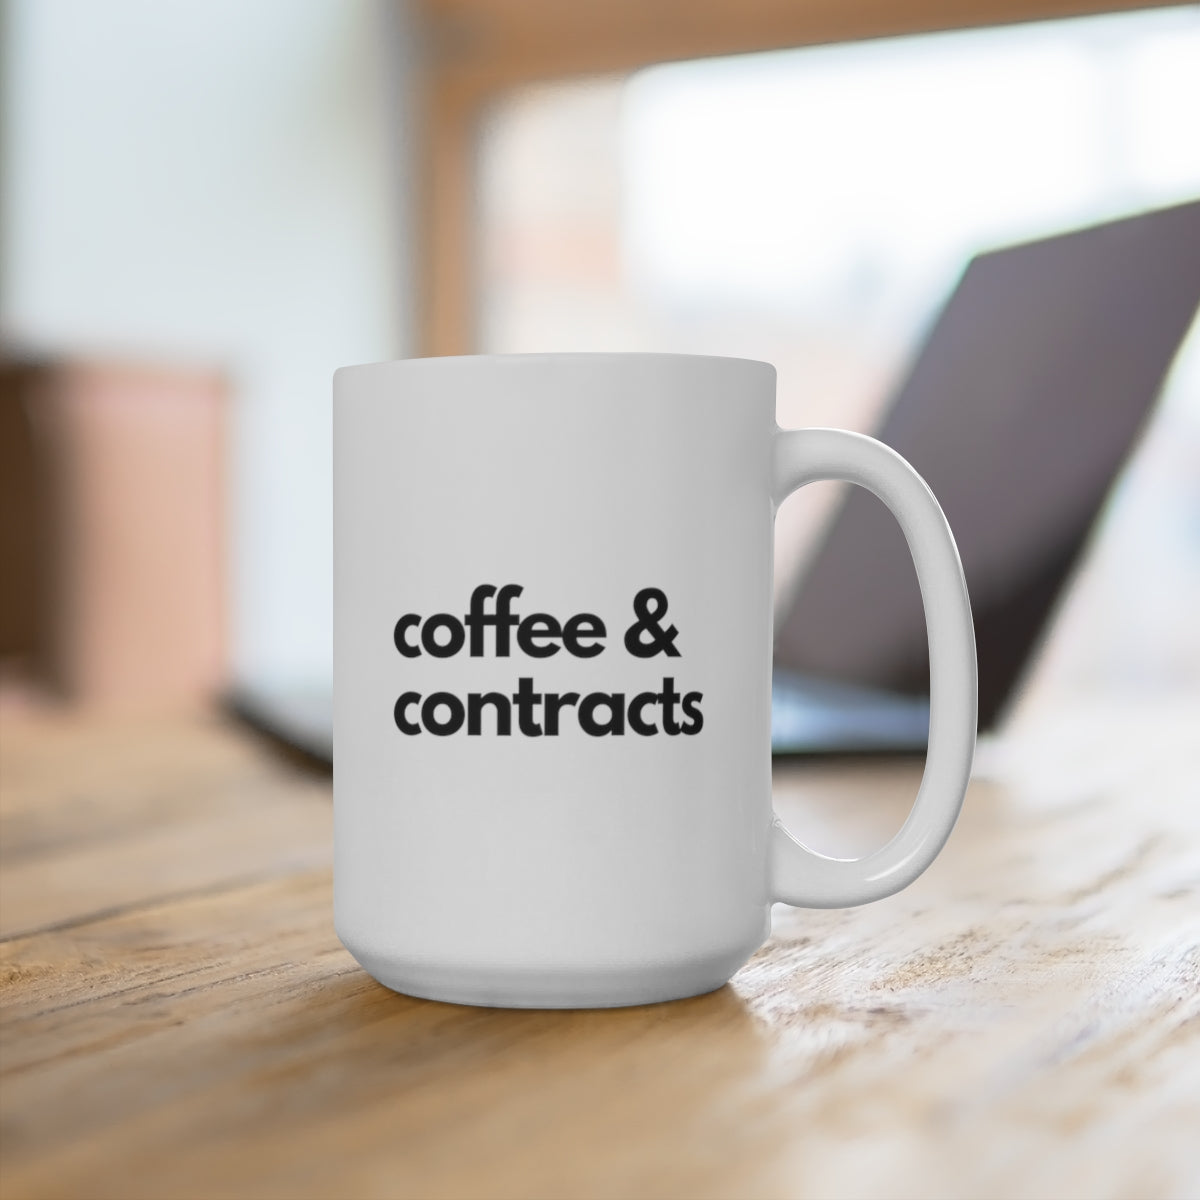 Mug - Coffee & Contracts